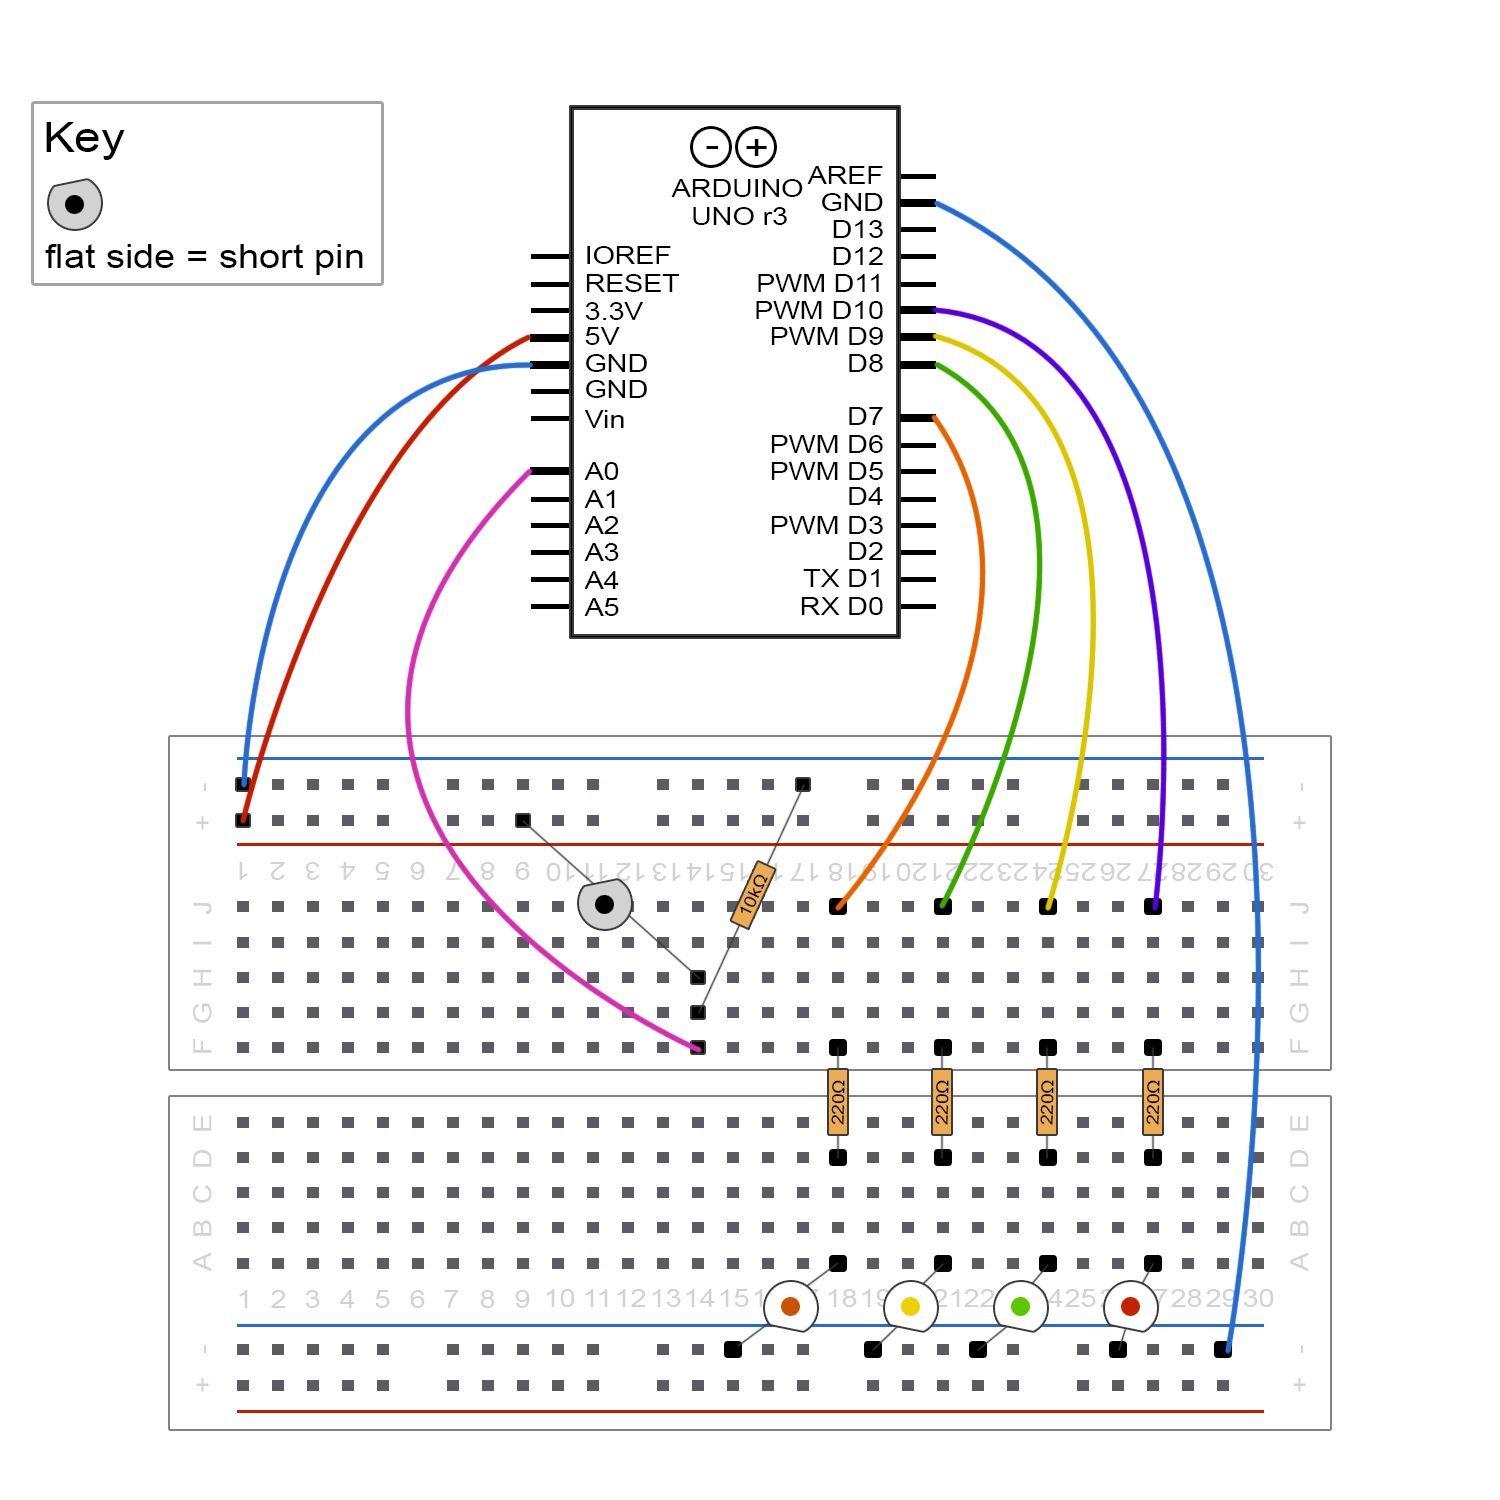 circuit board diagram